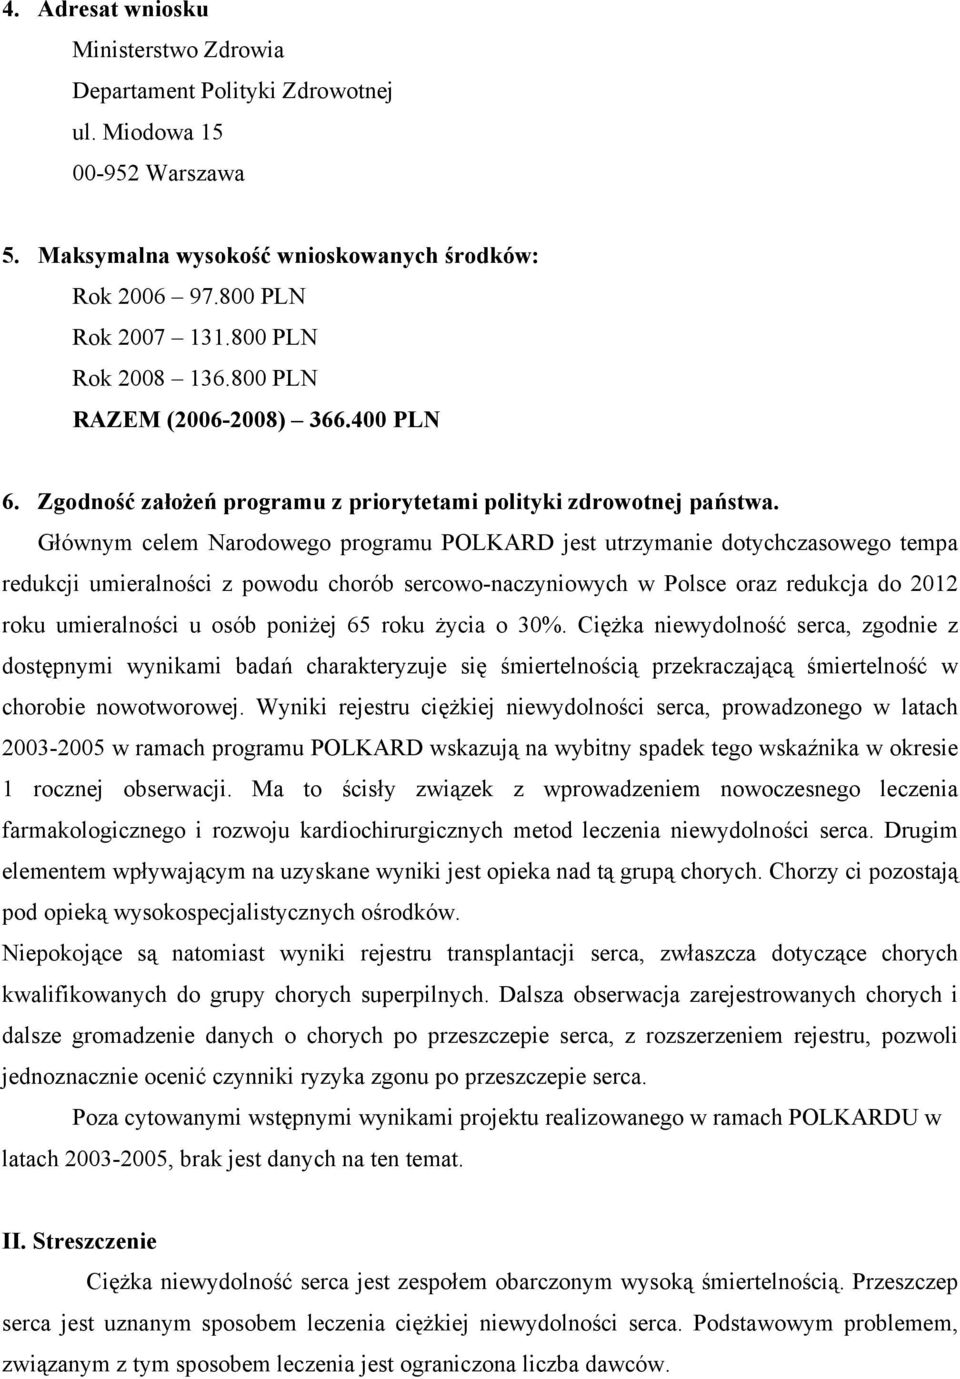 Głównym celem Narodowego programu POLKARD jest utrzymanie dotychczasowego tempa redukcji umieralności z powodu chorób sercowo-naczyniowych w Polsce oraz redukcja do 2012 roku umieralności u osób